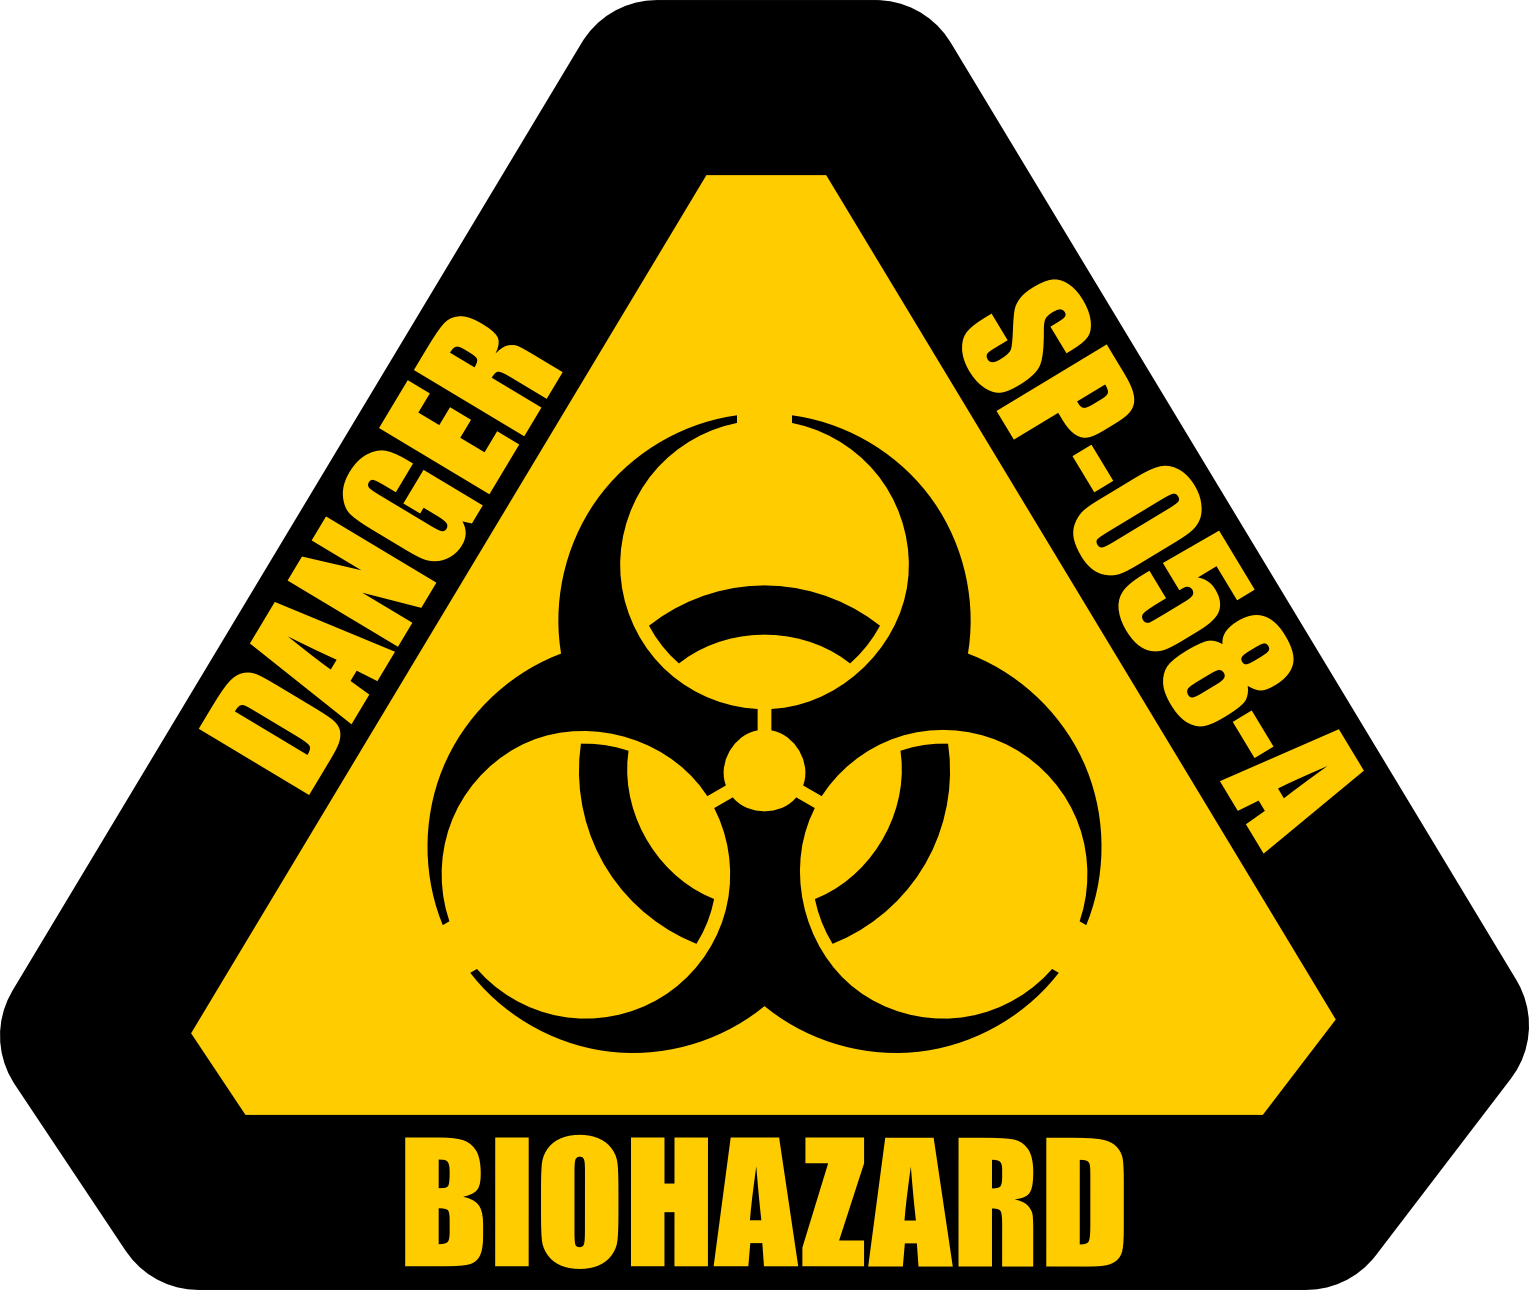 Biohazard Warning Label by AlienSquid on DeviantArt